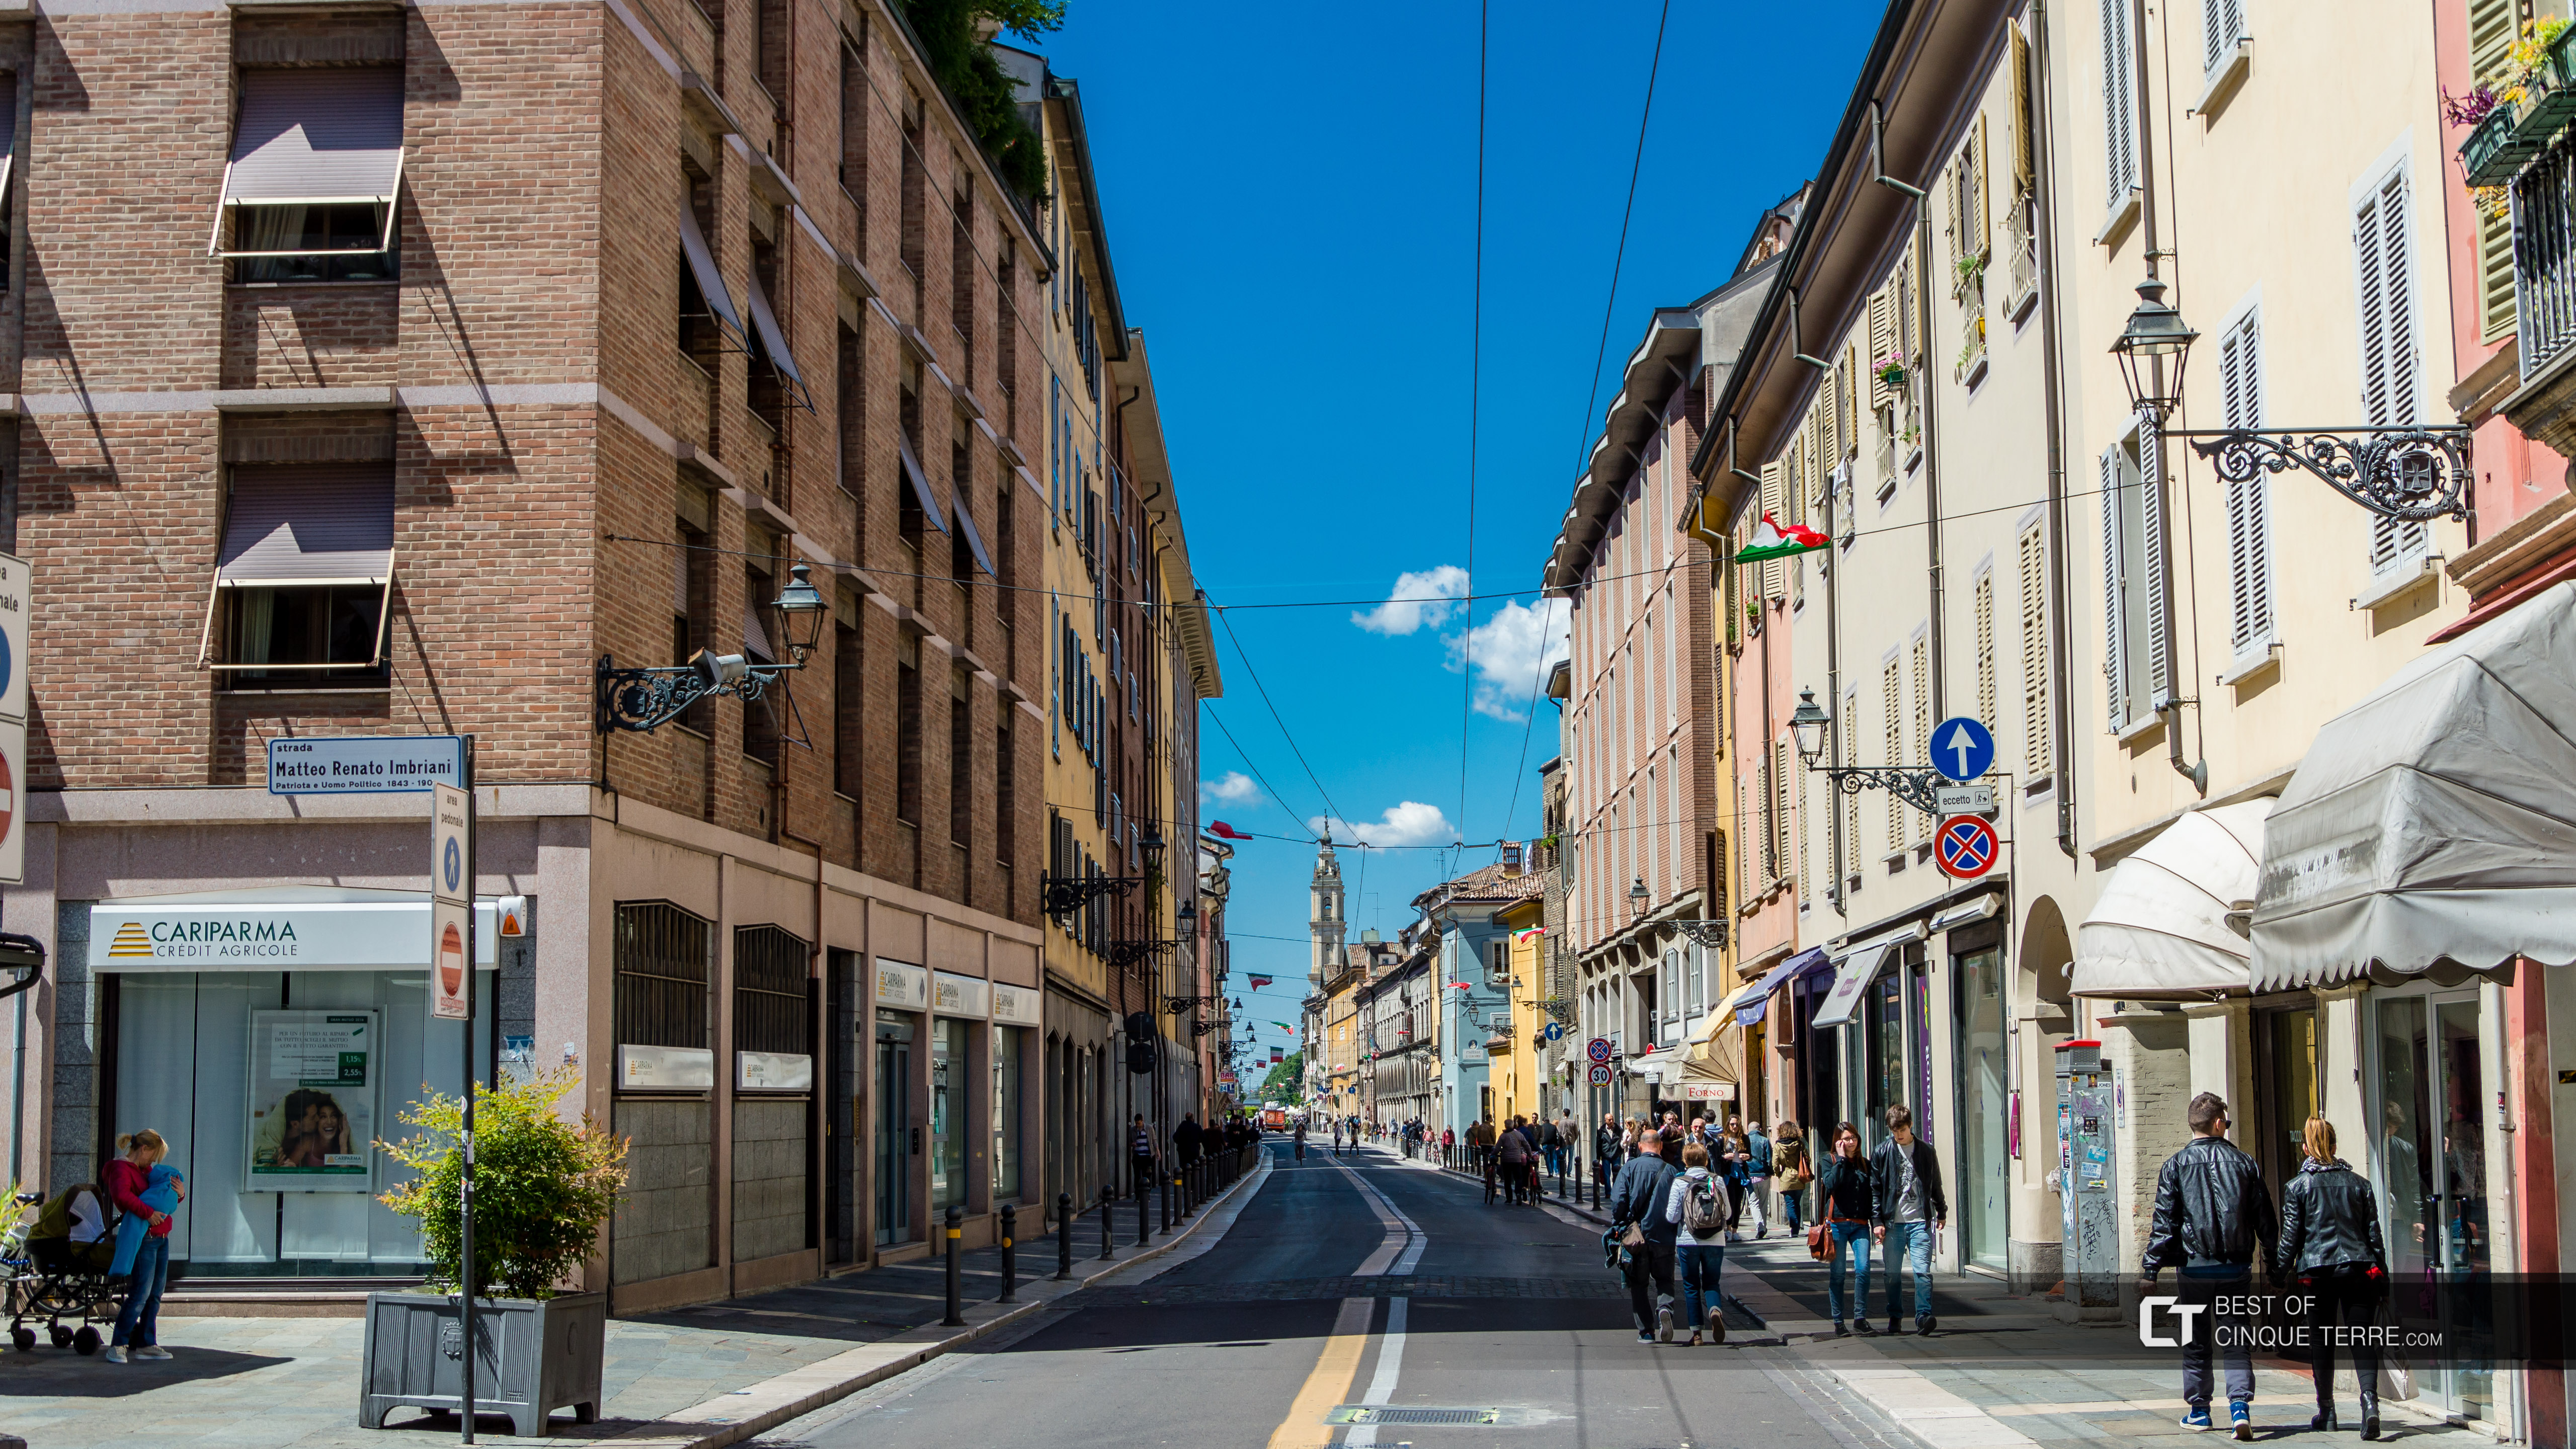 Calle d'Azeglio, Parma, Italia